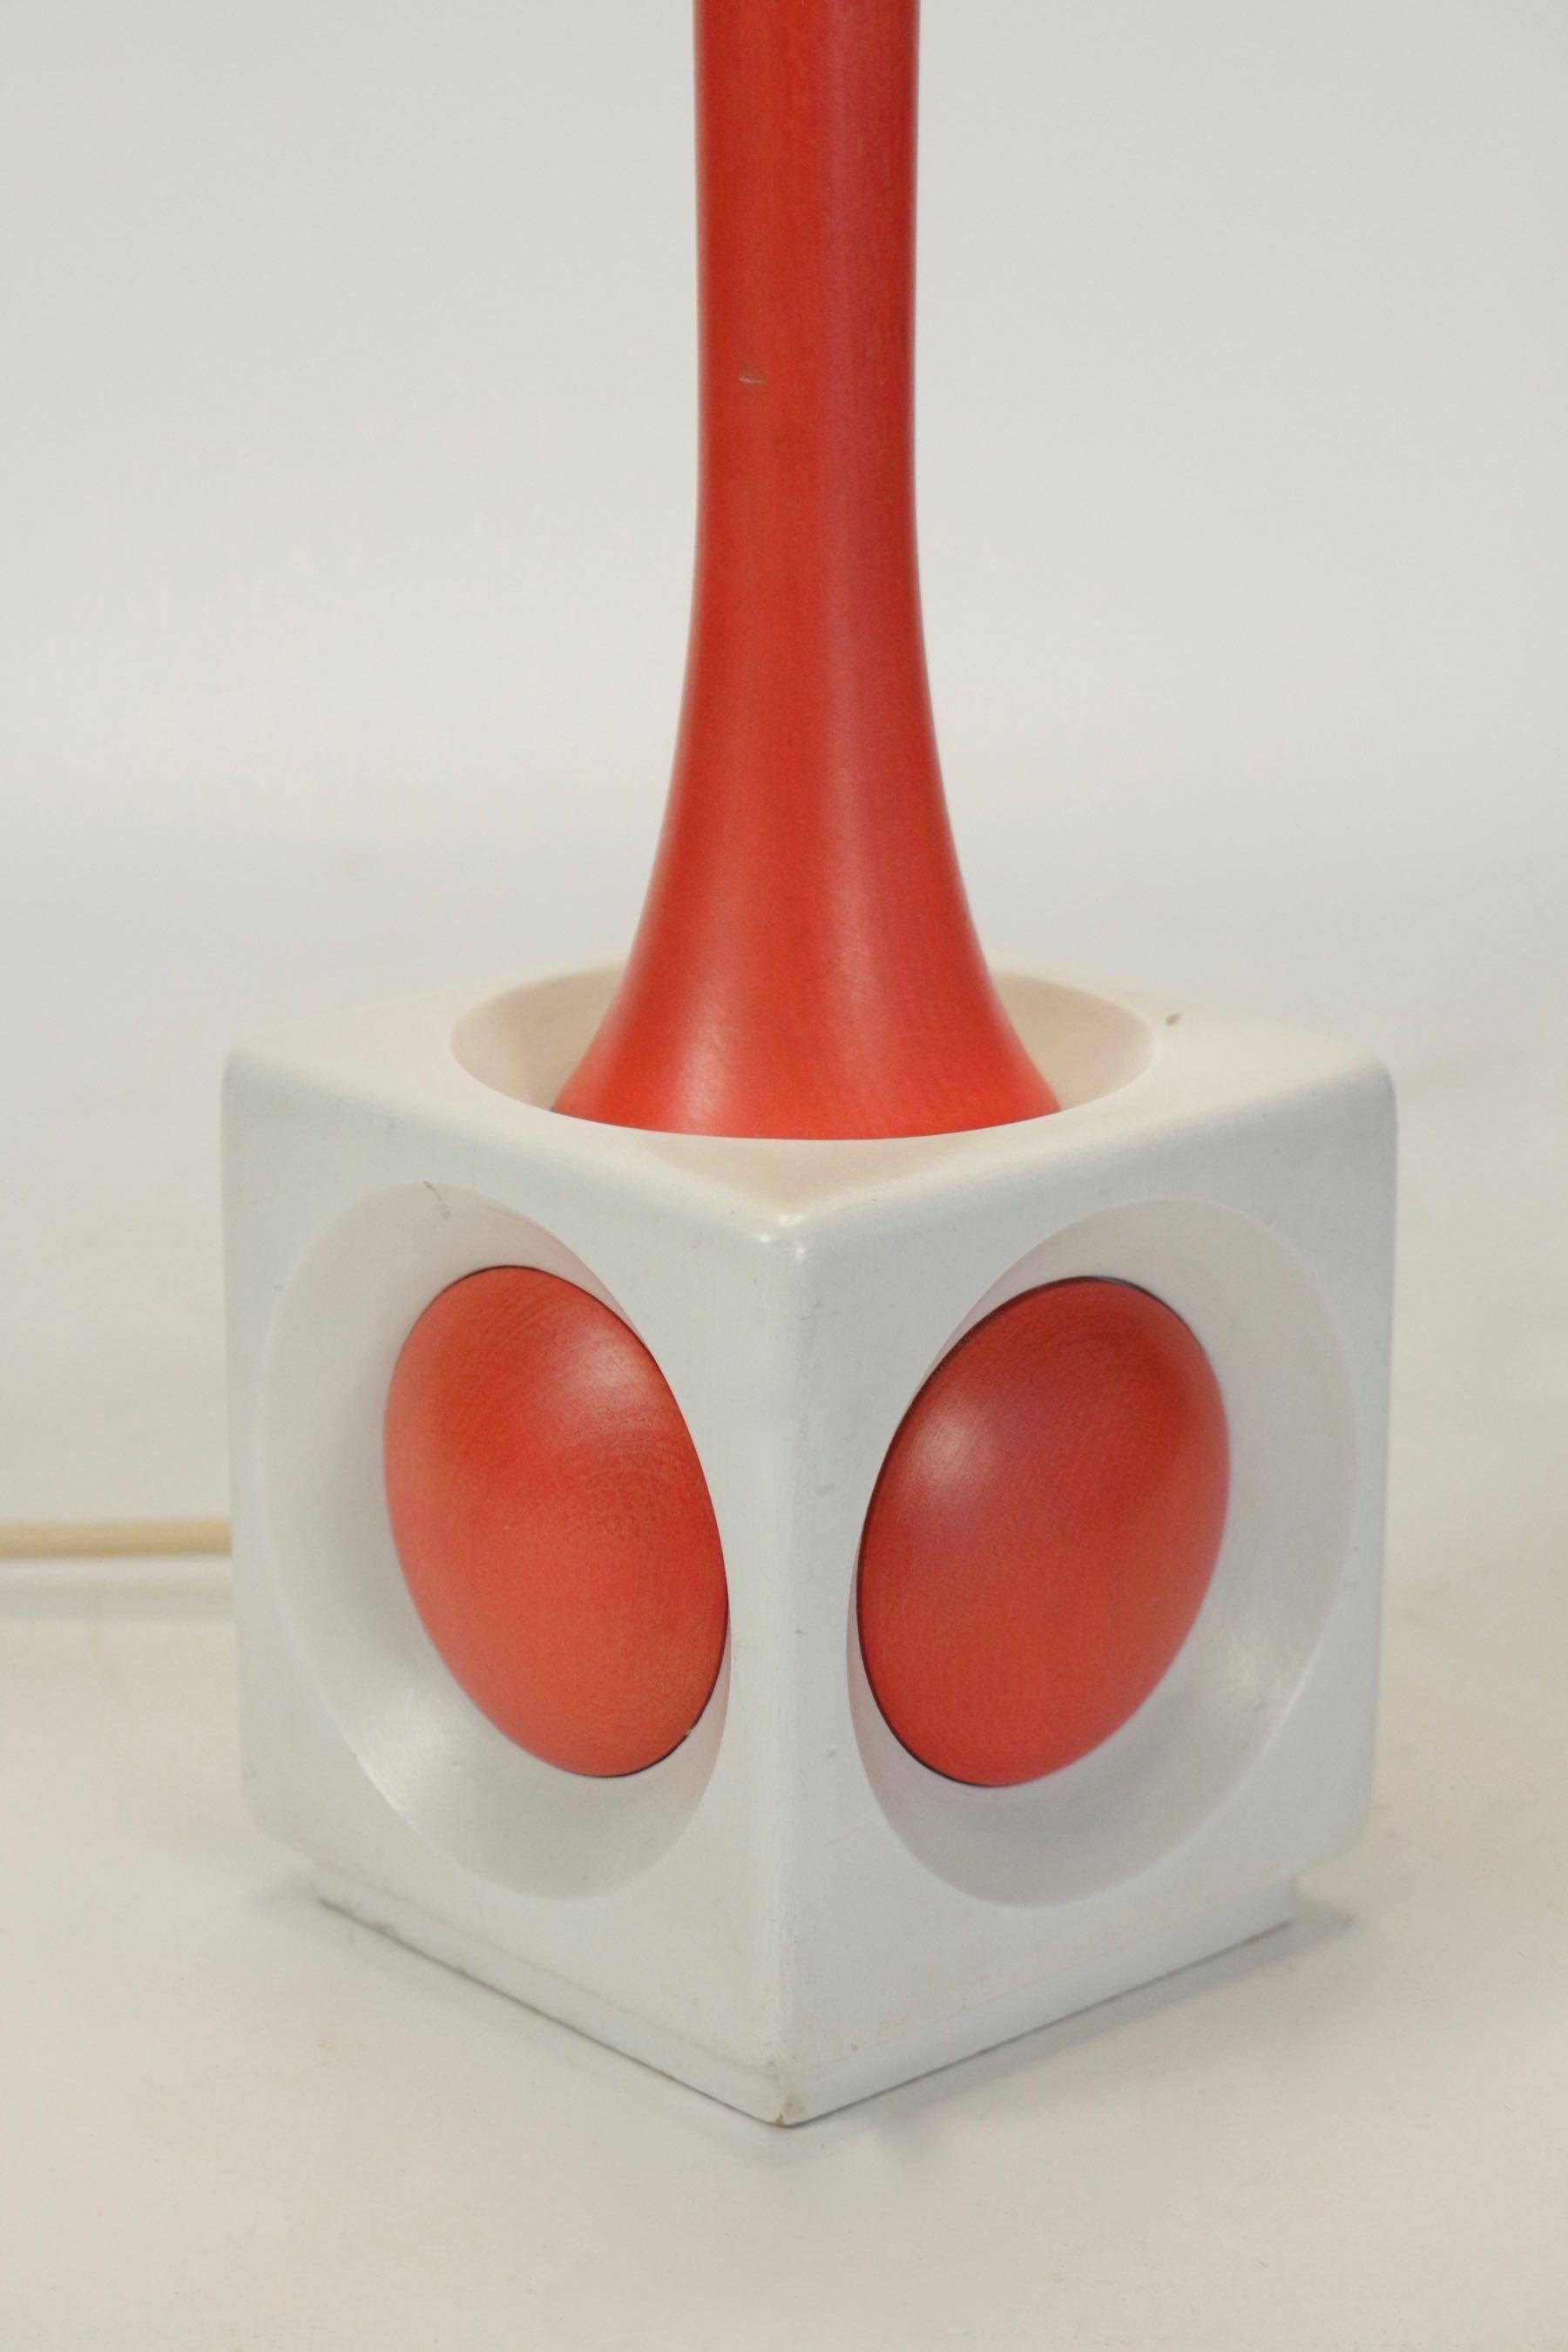 Lampe en bois peint en orange et blanc, circa 1960, design midcentury.
  